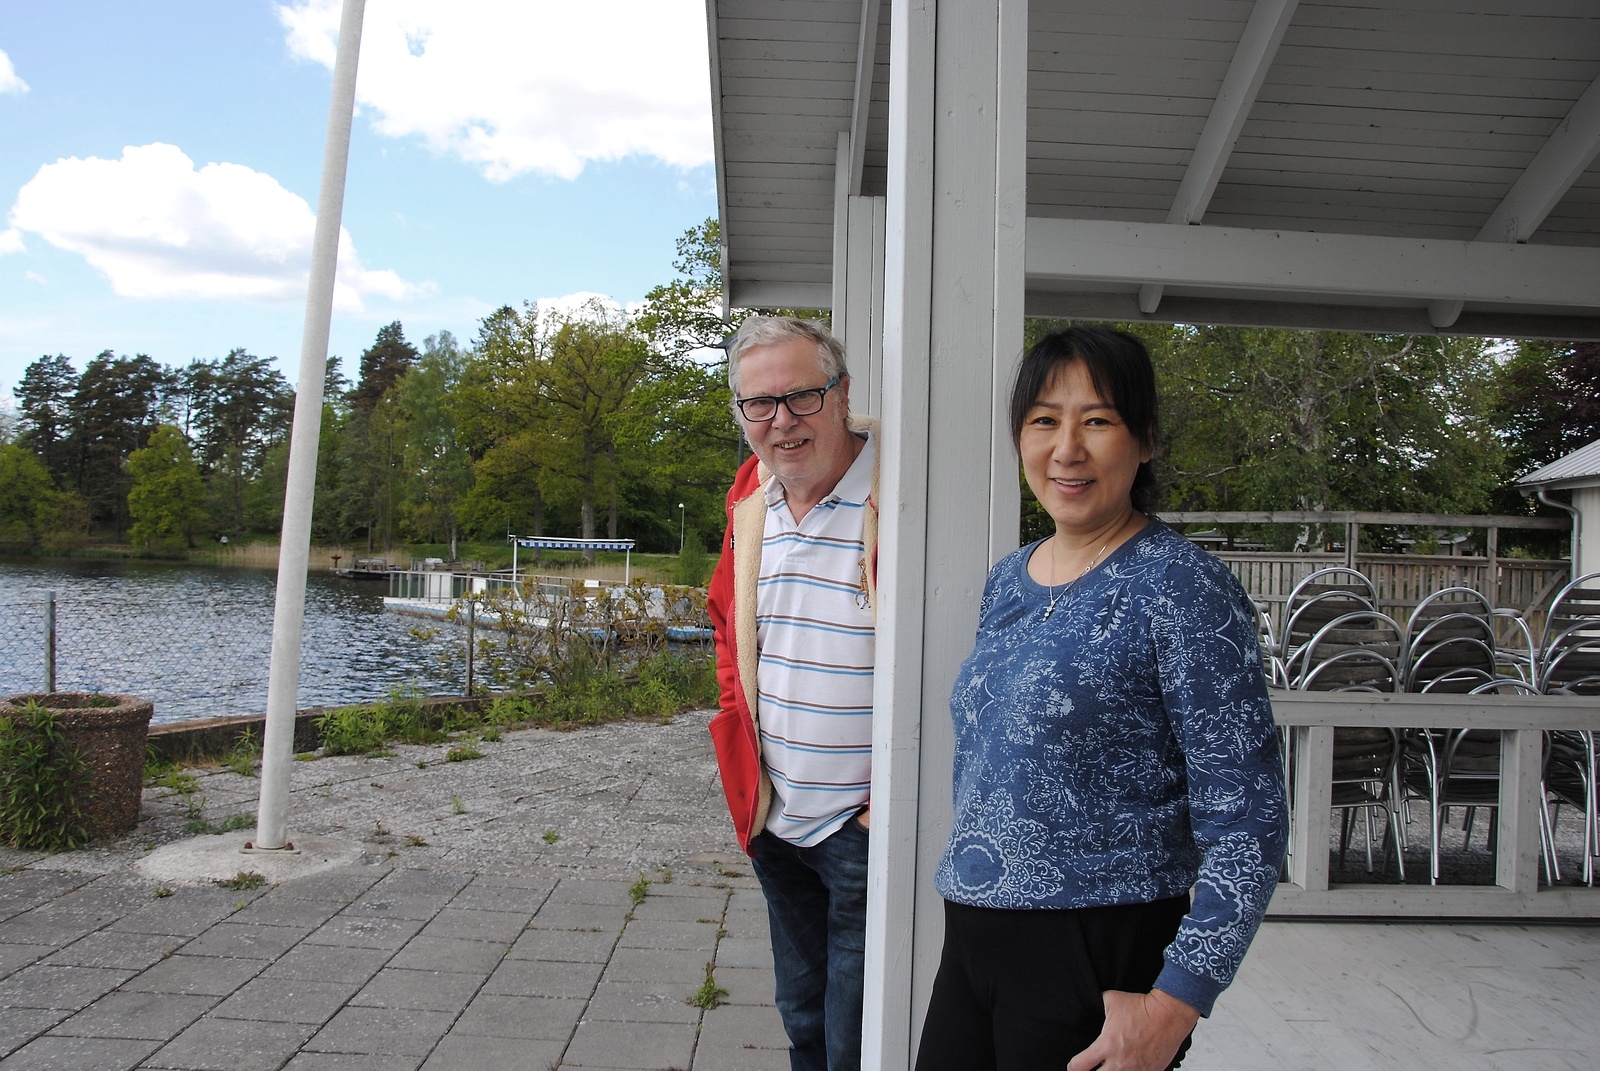 Erling och Angela Karlsson ska öppna upp Strandpaviljongen efter att den stått tom i två år.